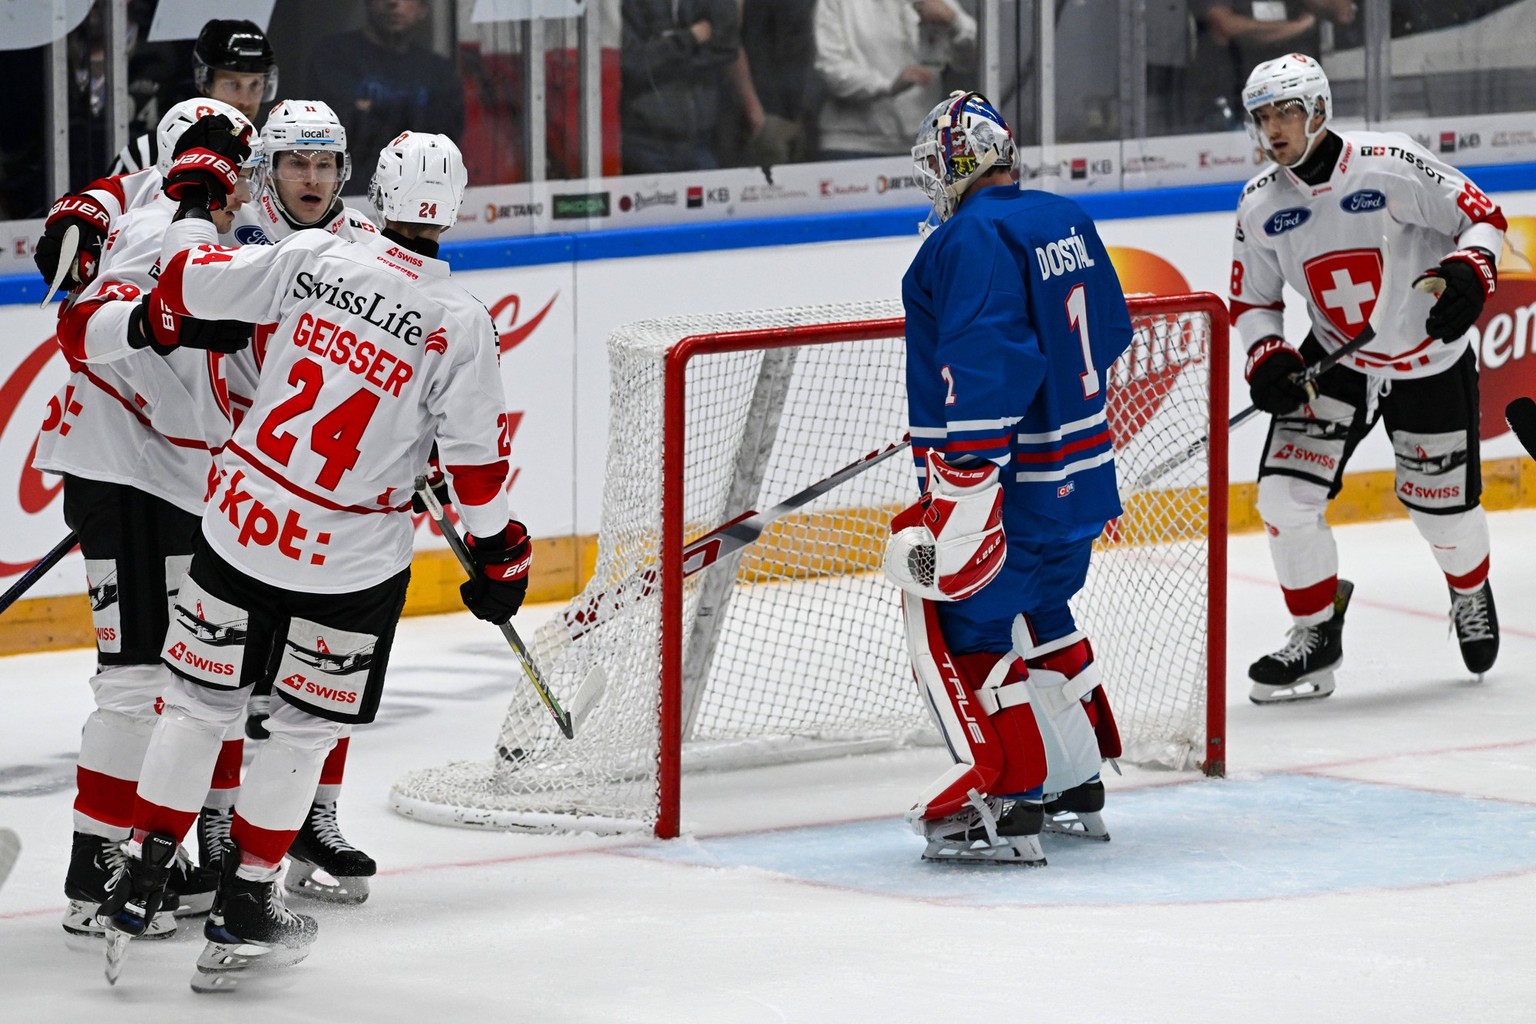 niederlagenserie endet gegen tschechien – die schweizer hockey-nati gewinnt knapp